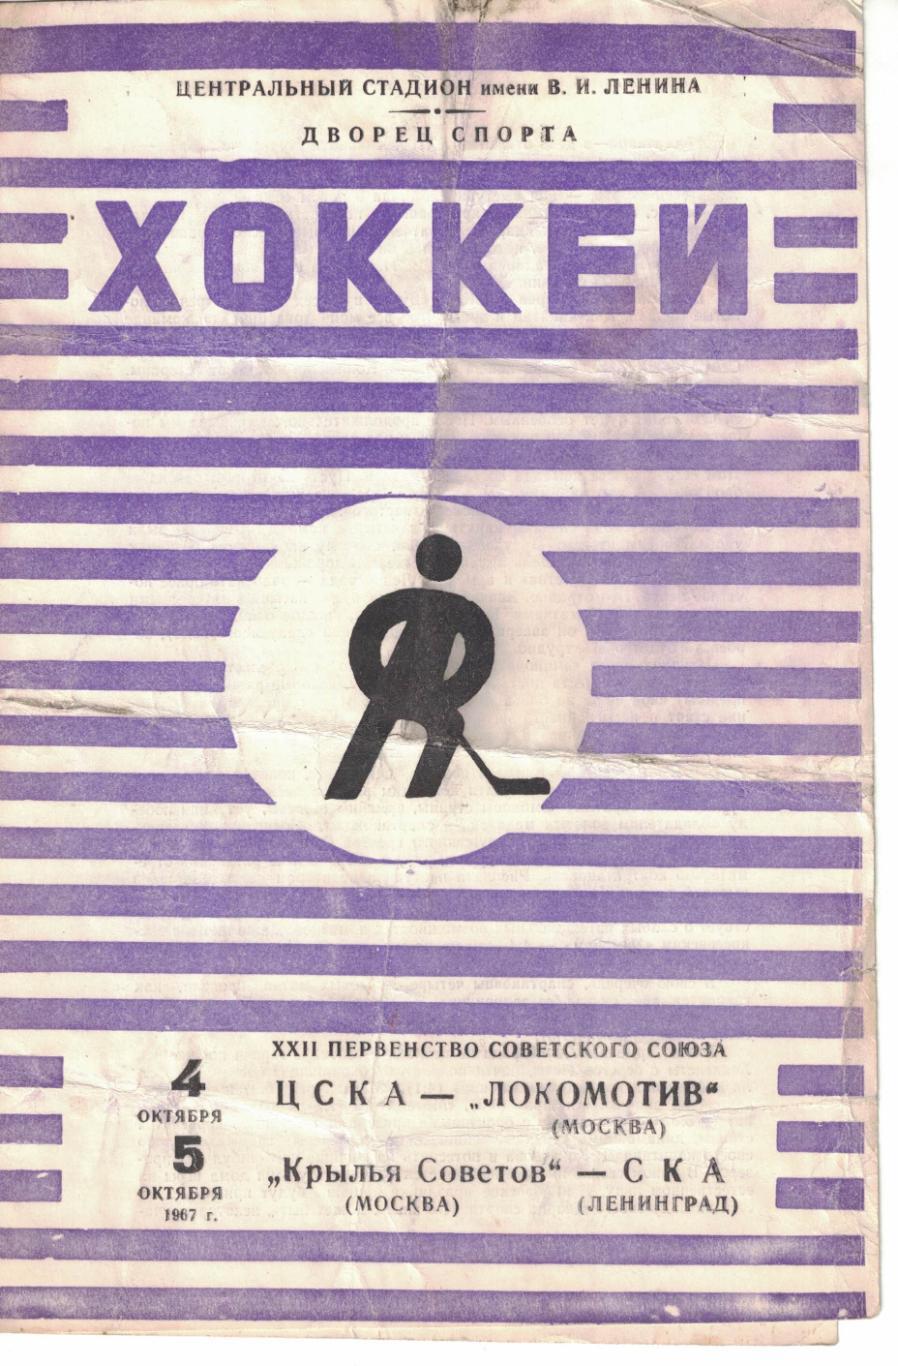 ЦСКА - Локомотив Москва, Крылья Советов Москва - СКА Ленинград 04 и 05.10.1967